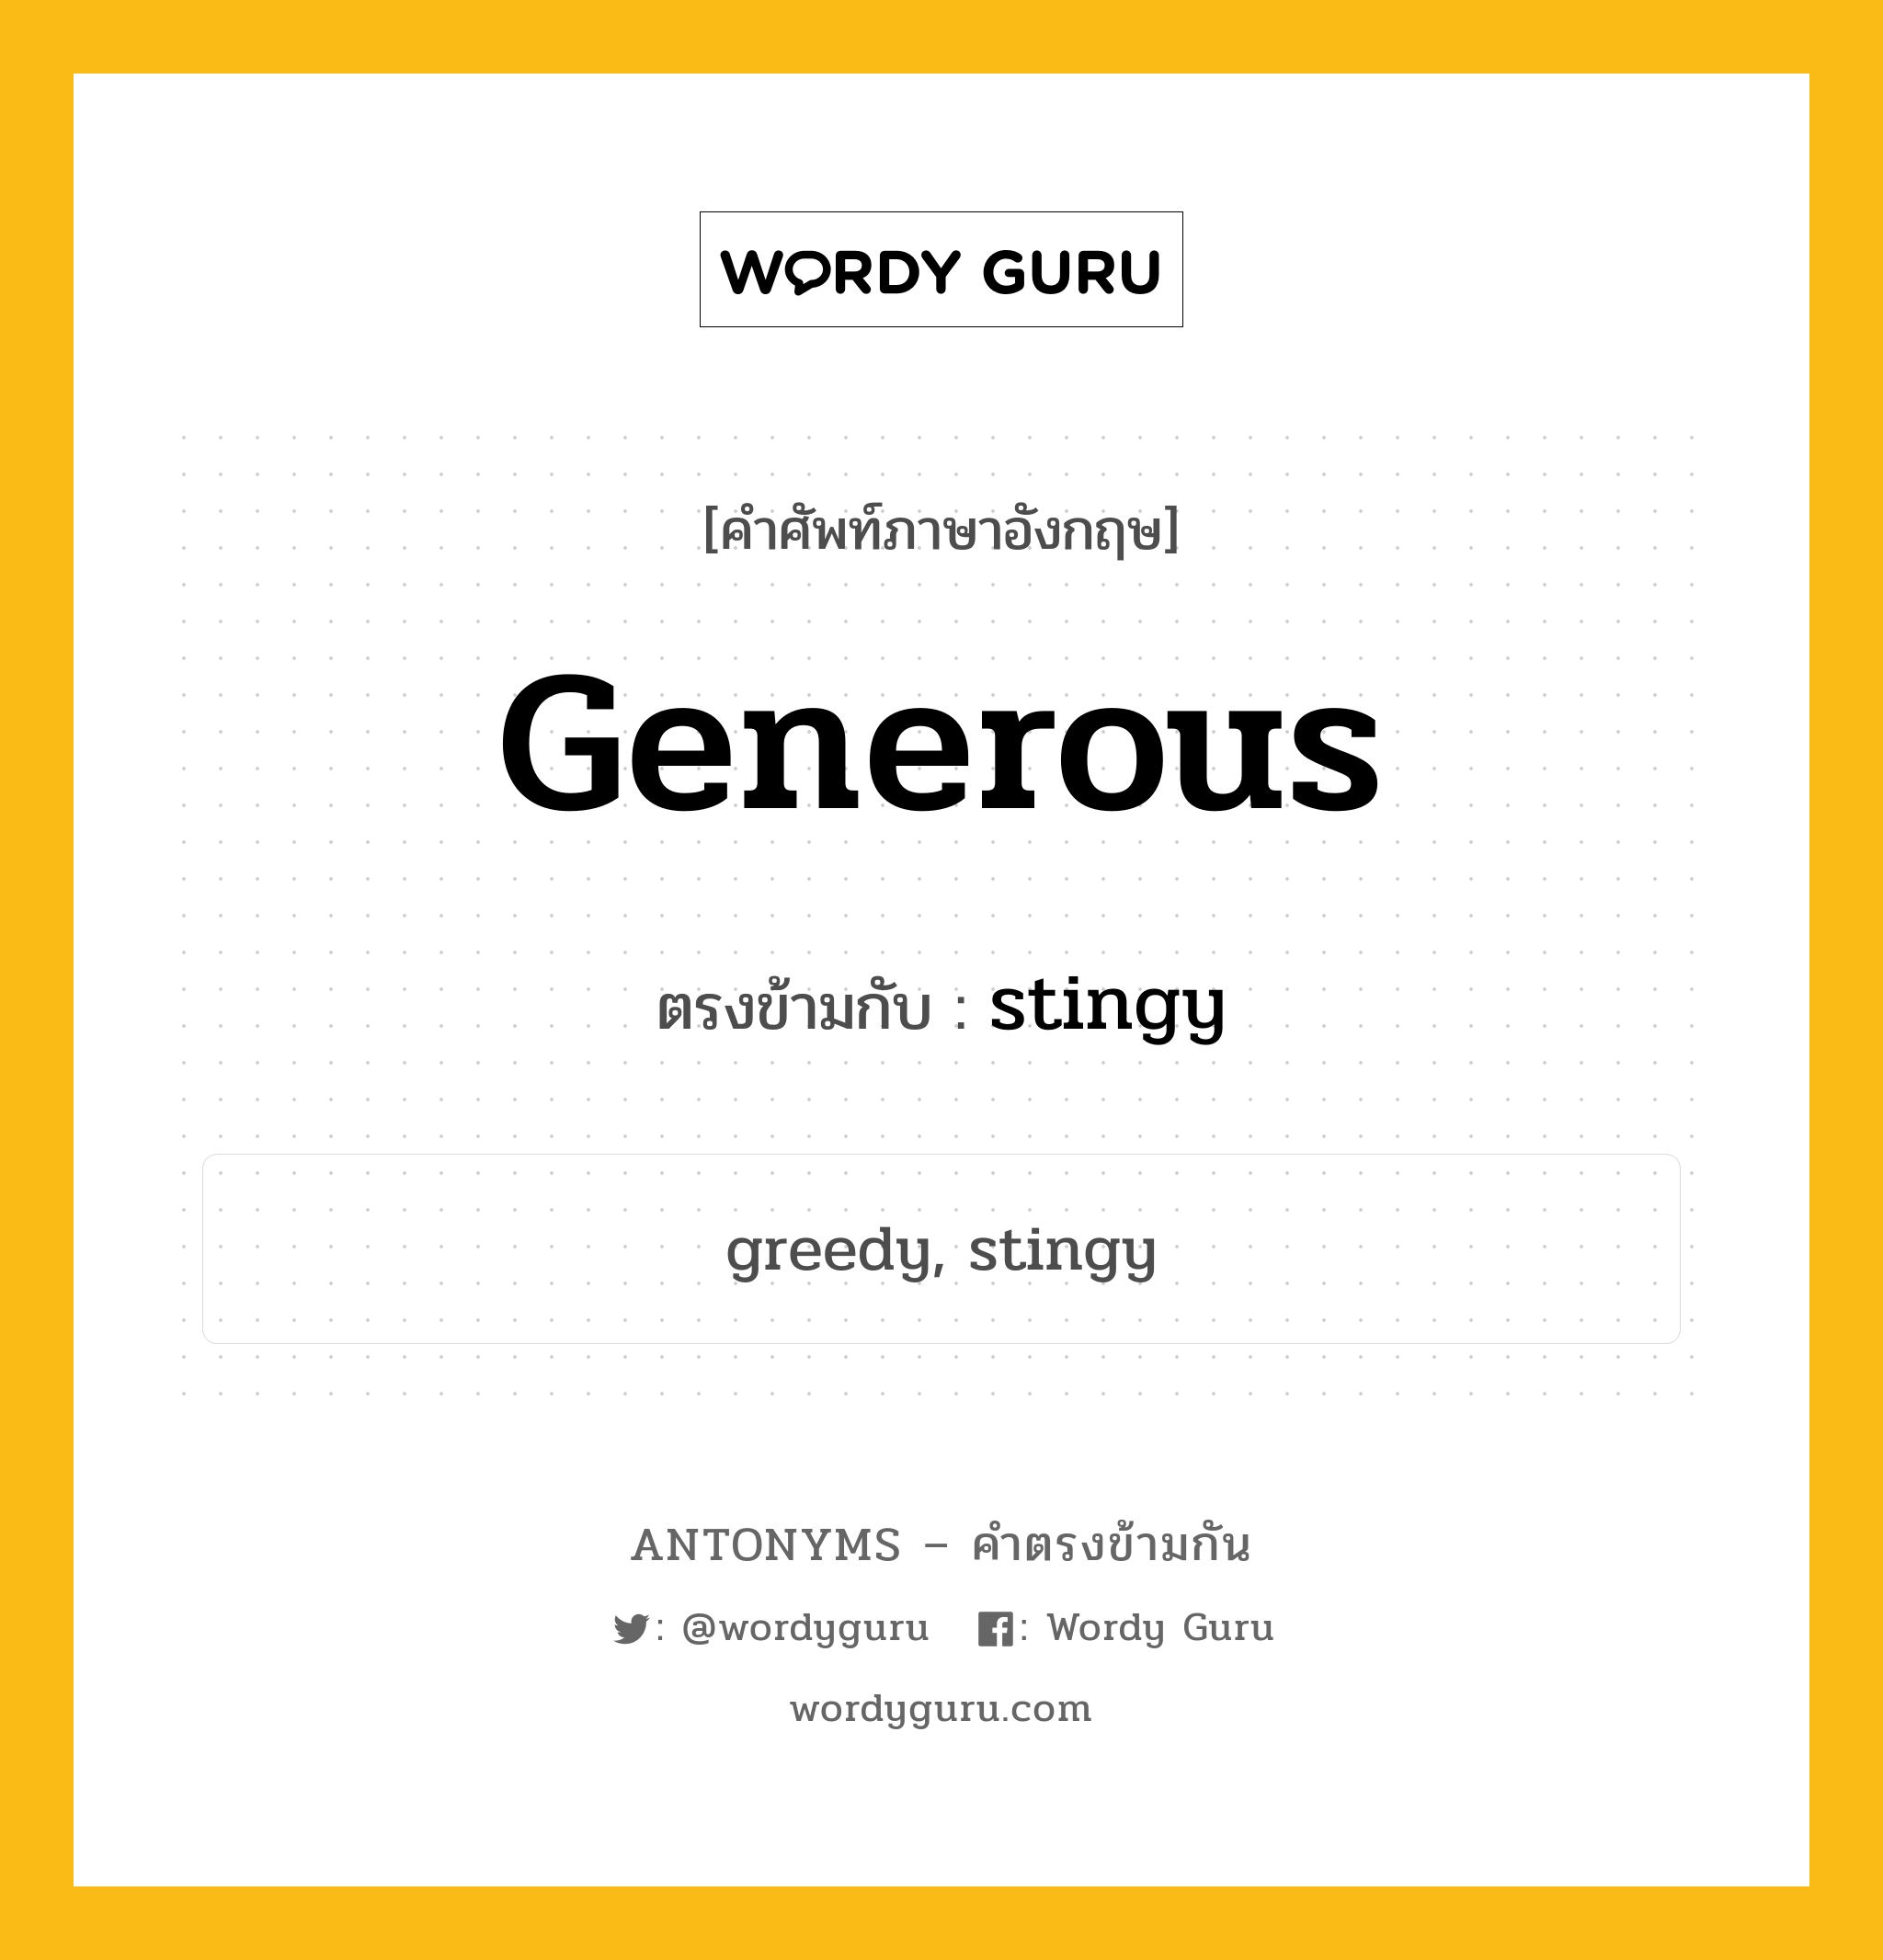 generous เป็นคำตรงข้ามกับคำไหนบ้าง?, คำศัพท์ภาษาอังกฤษ generous ตรงข้ามกับ stingy หมวด stingy